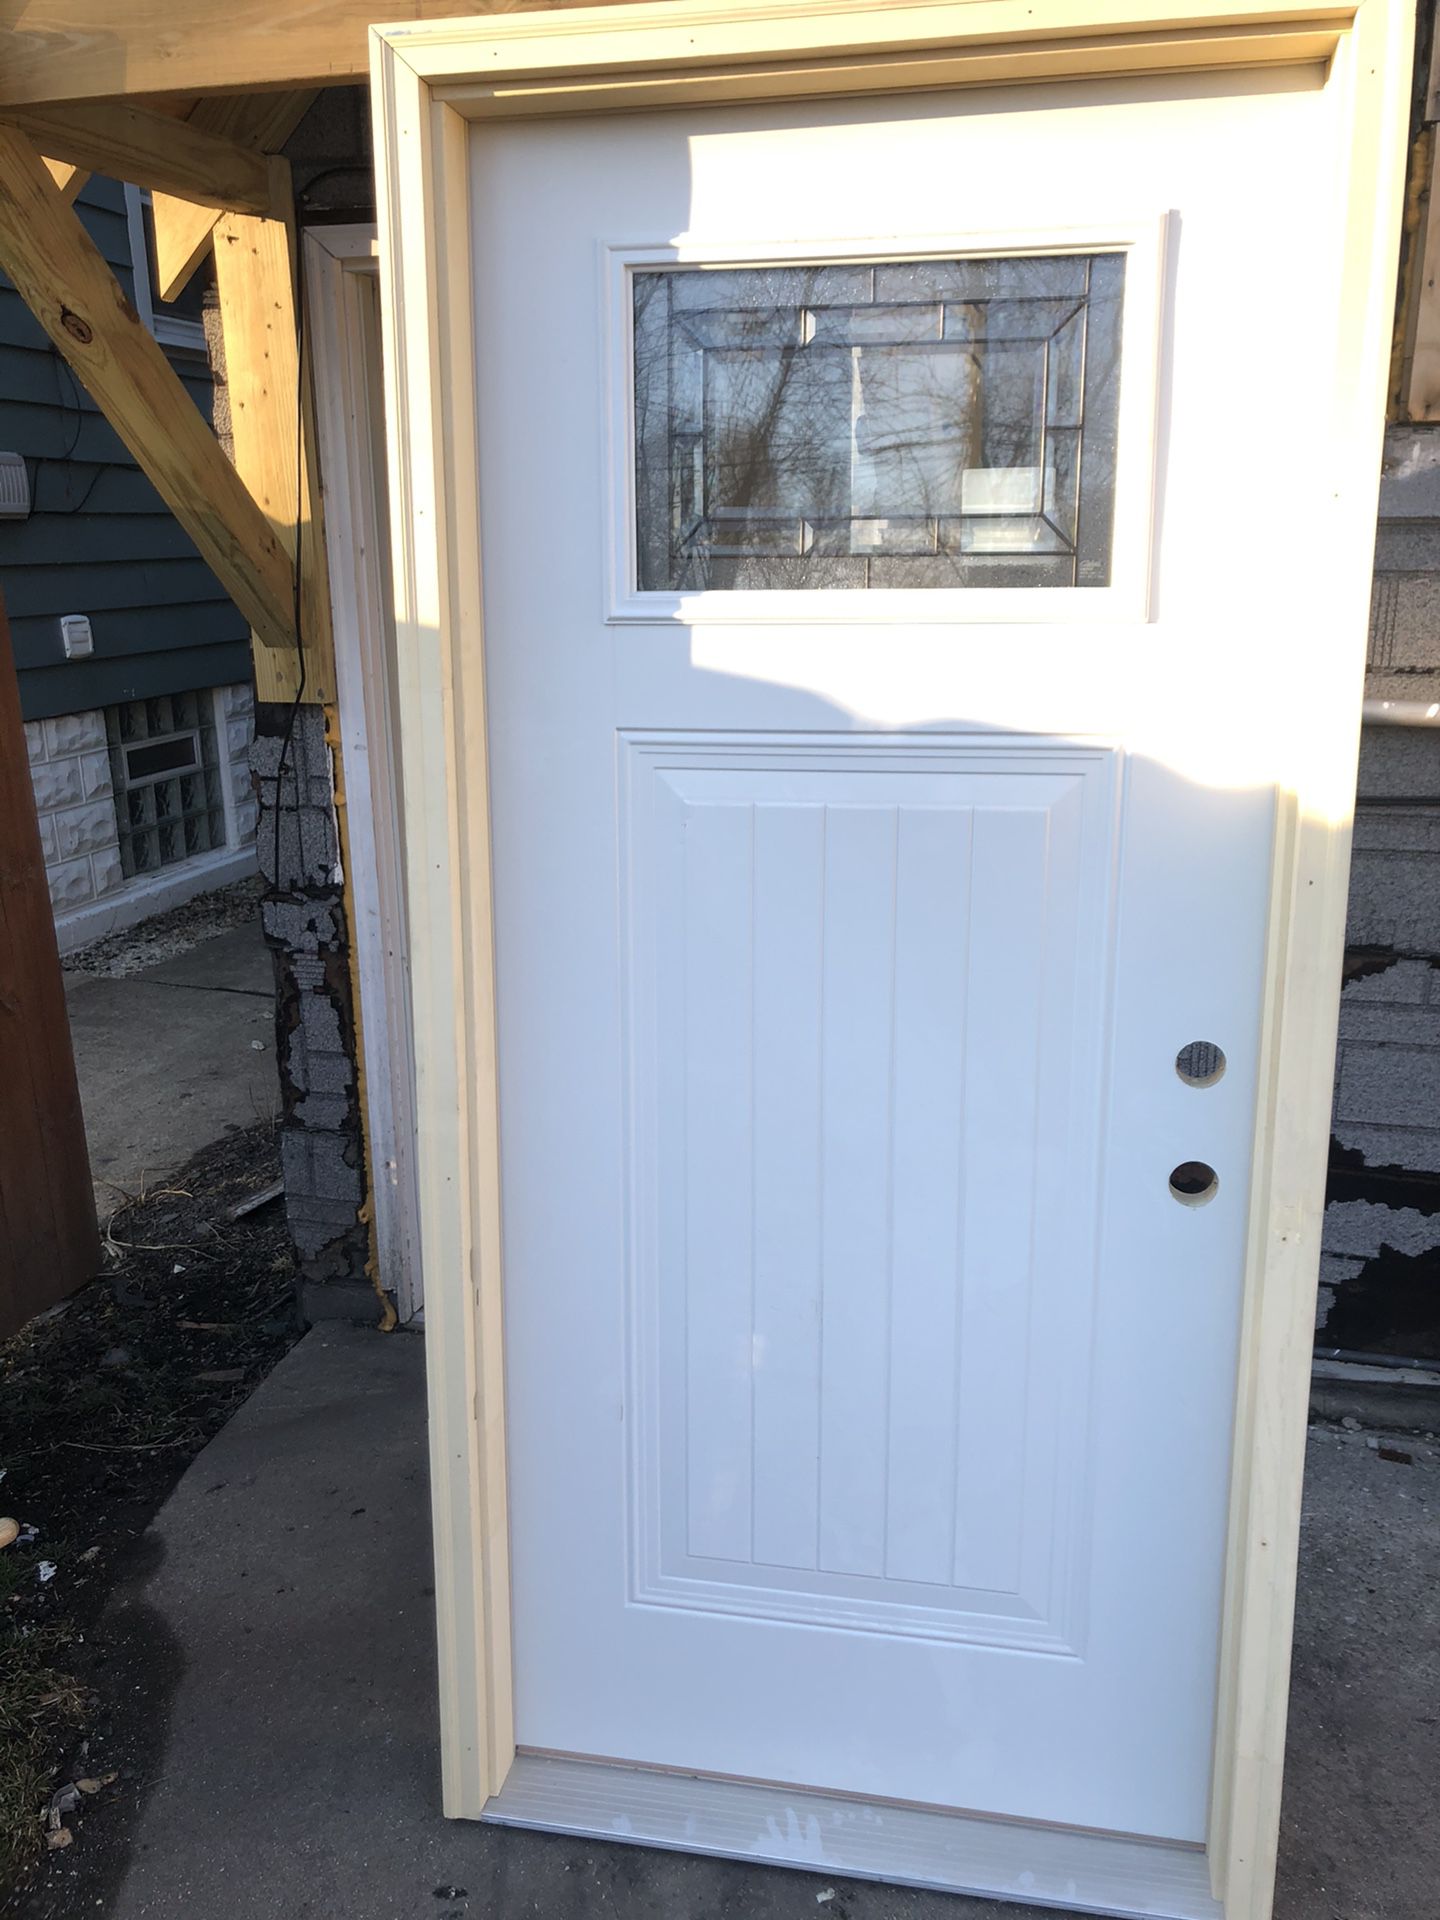 Brand new entry door